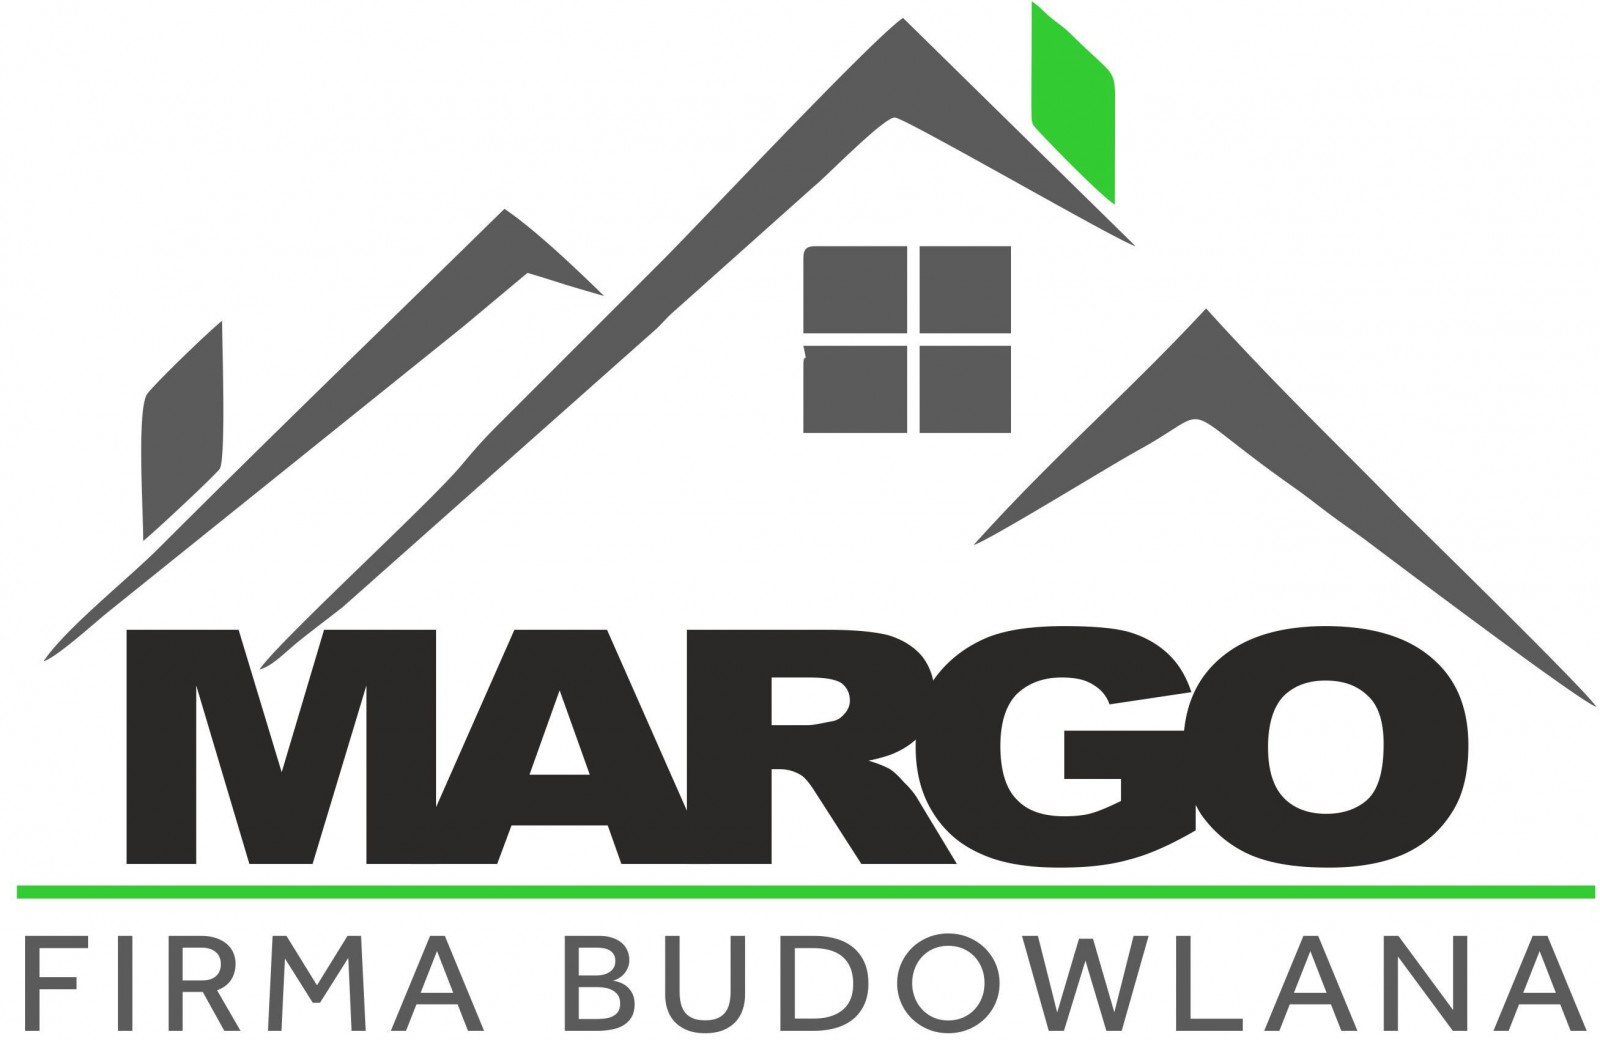 Firma budowlana MARGO Szymon Gola, Krzysztof Markiewicz s.c.